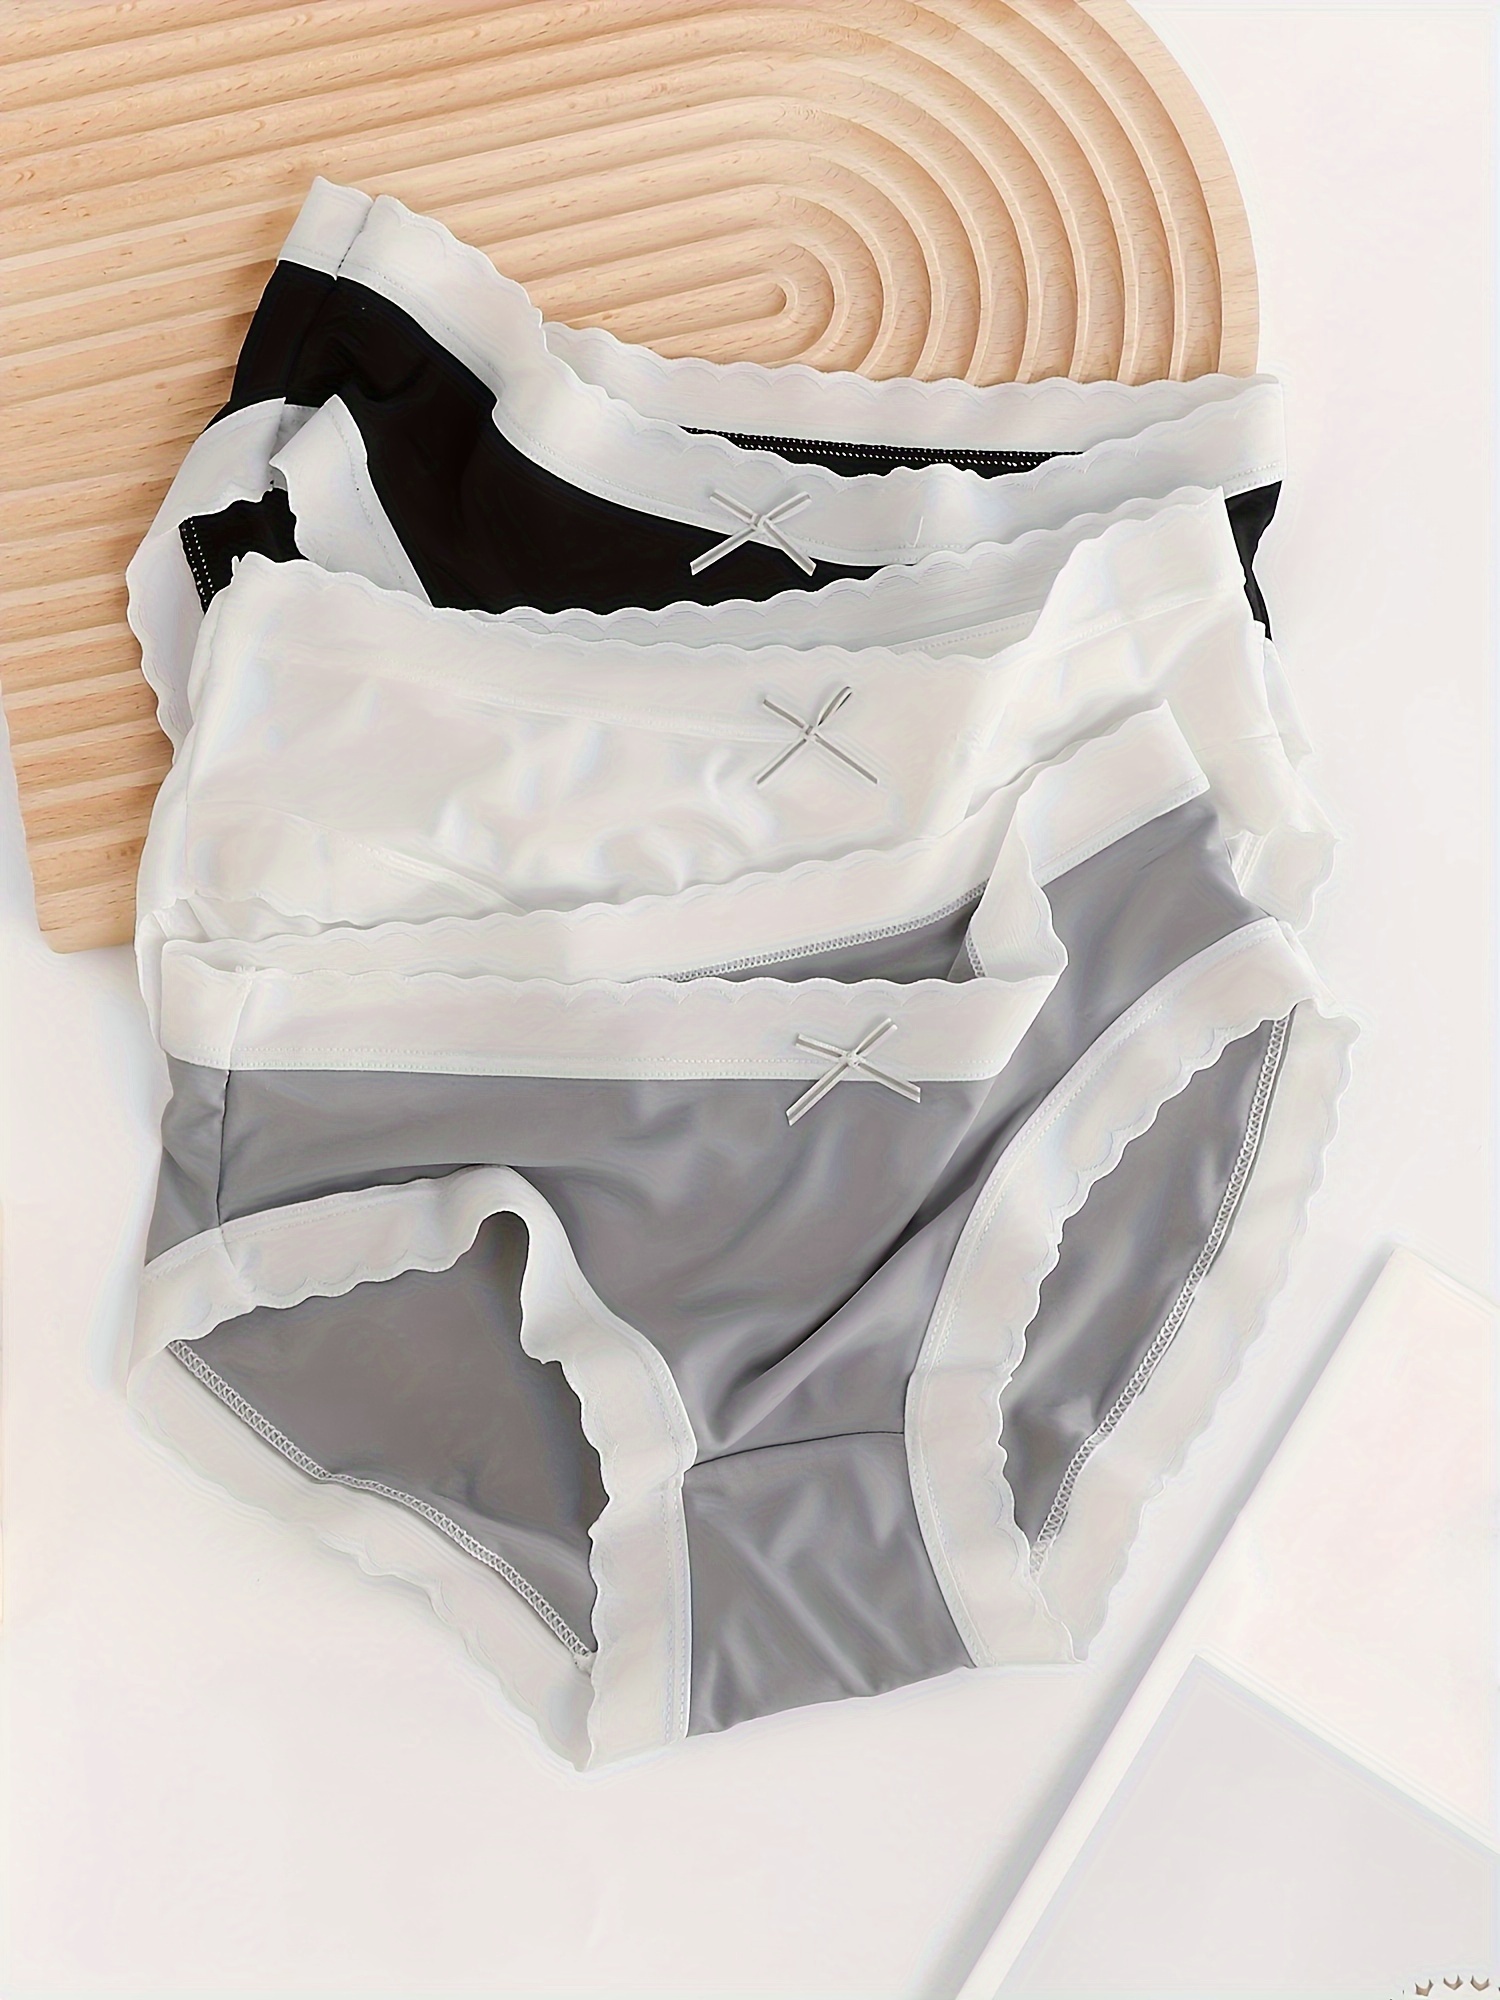 FINETOO 3Pcs/set Women Striped Brazilian Panties S-XL Laies Colorful  Underwear Cotton Underpants Comfortable Panties Lingerie - AliExpress